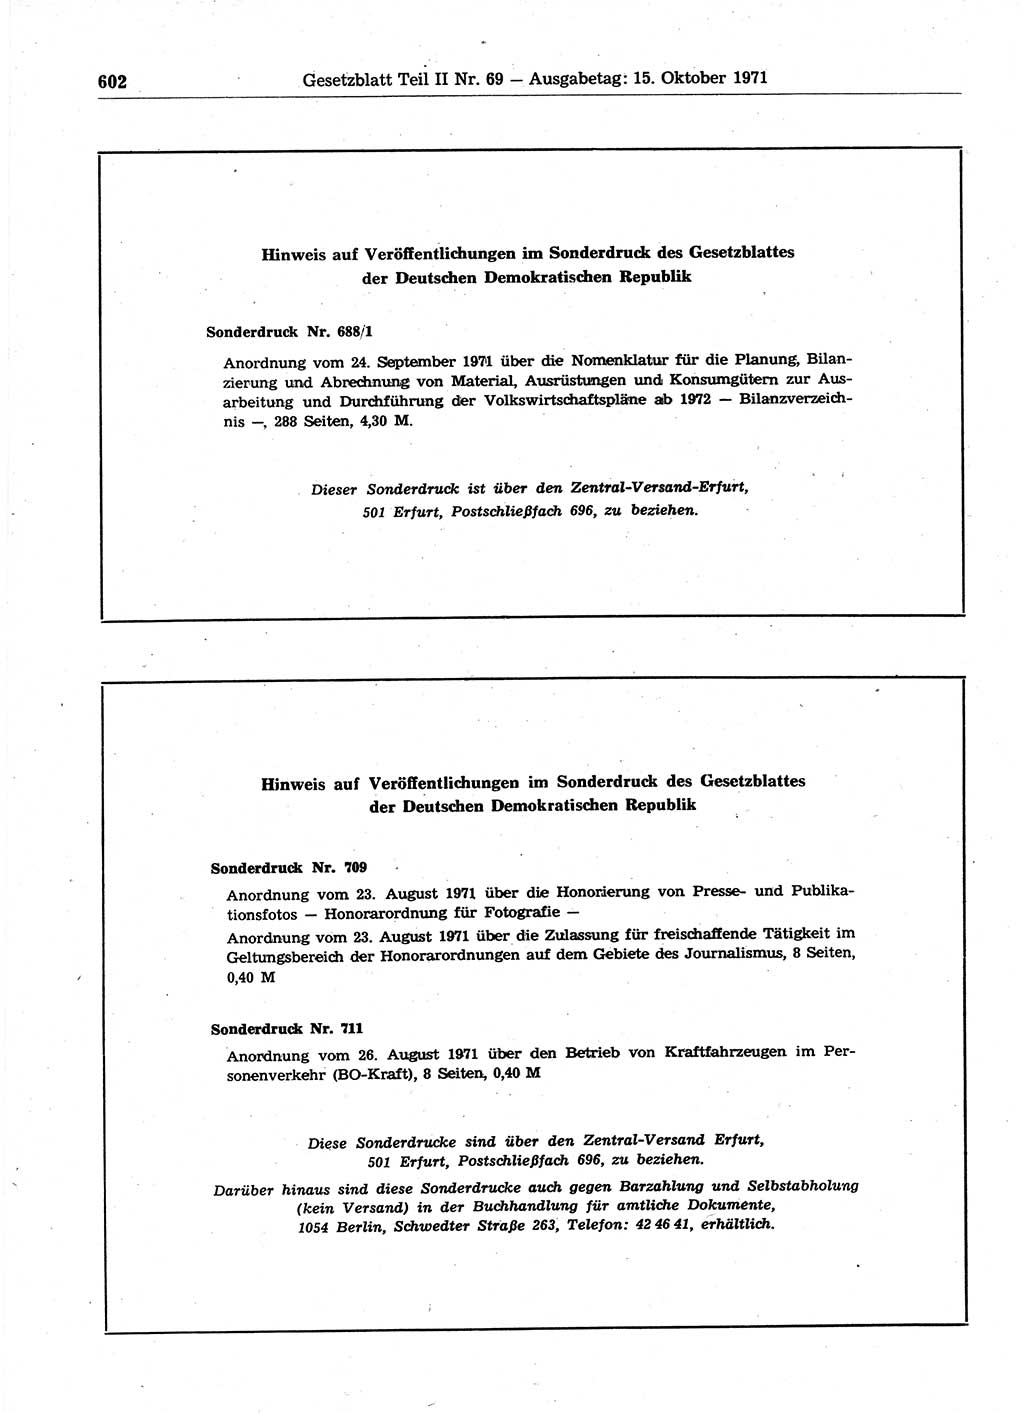 Gesetzblatt (GBl.) der Deutschen Demokratischen Republik (DDR) Teil ⅠⅠ 1971, Seite 602 (GBl. DDR ⅠⅠ 1971, S. 602)